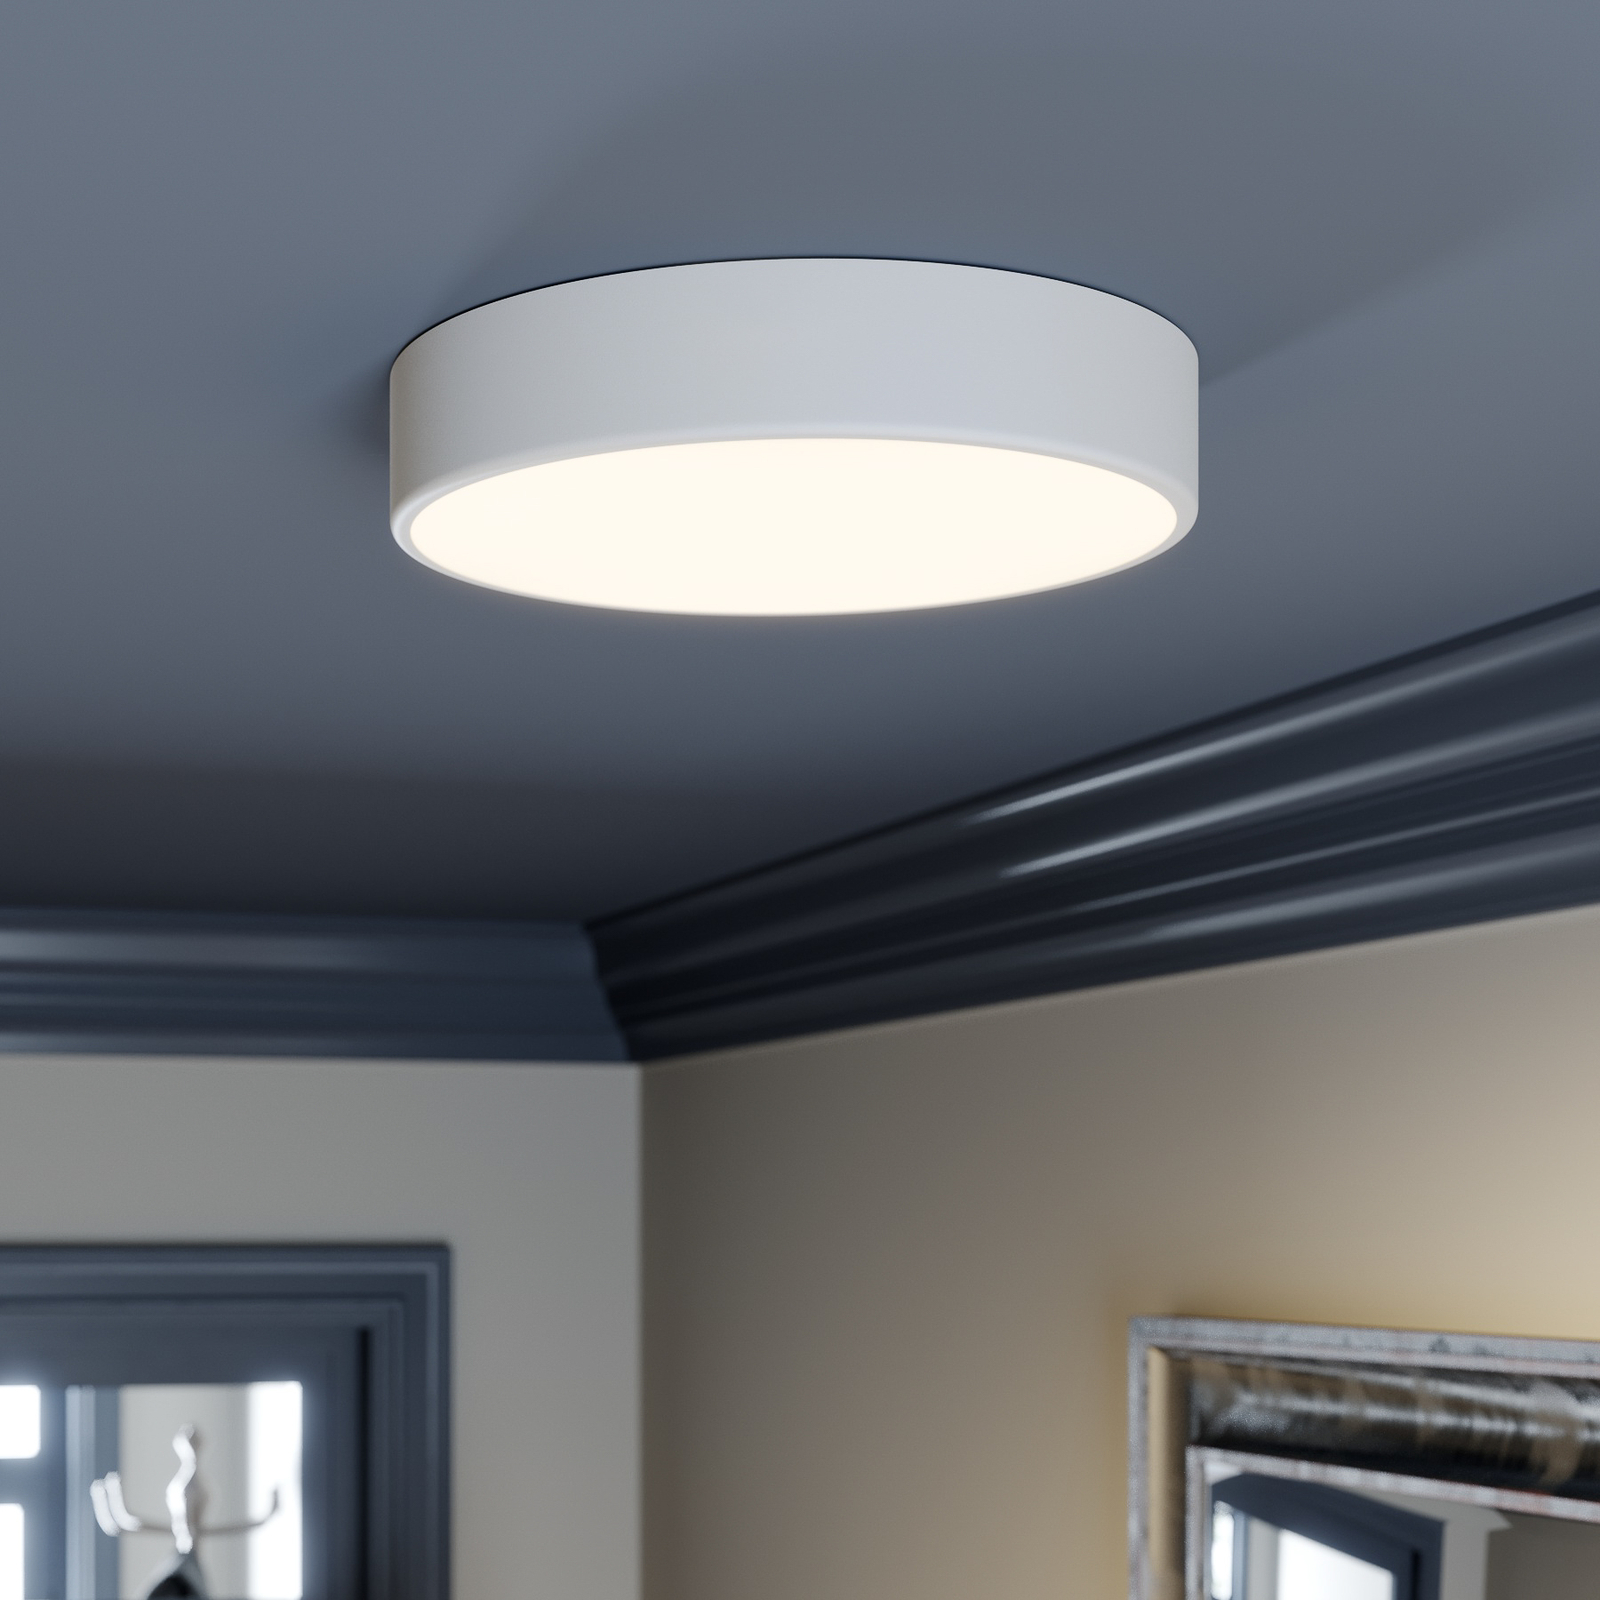 Cleo ceiling light, Ø 40 cm, white